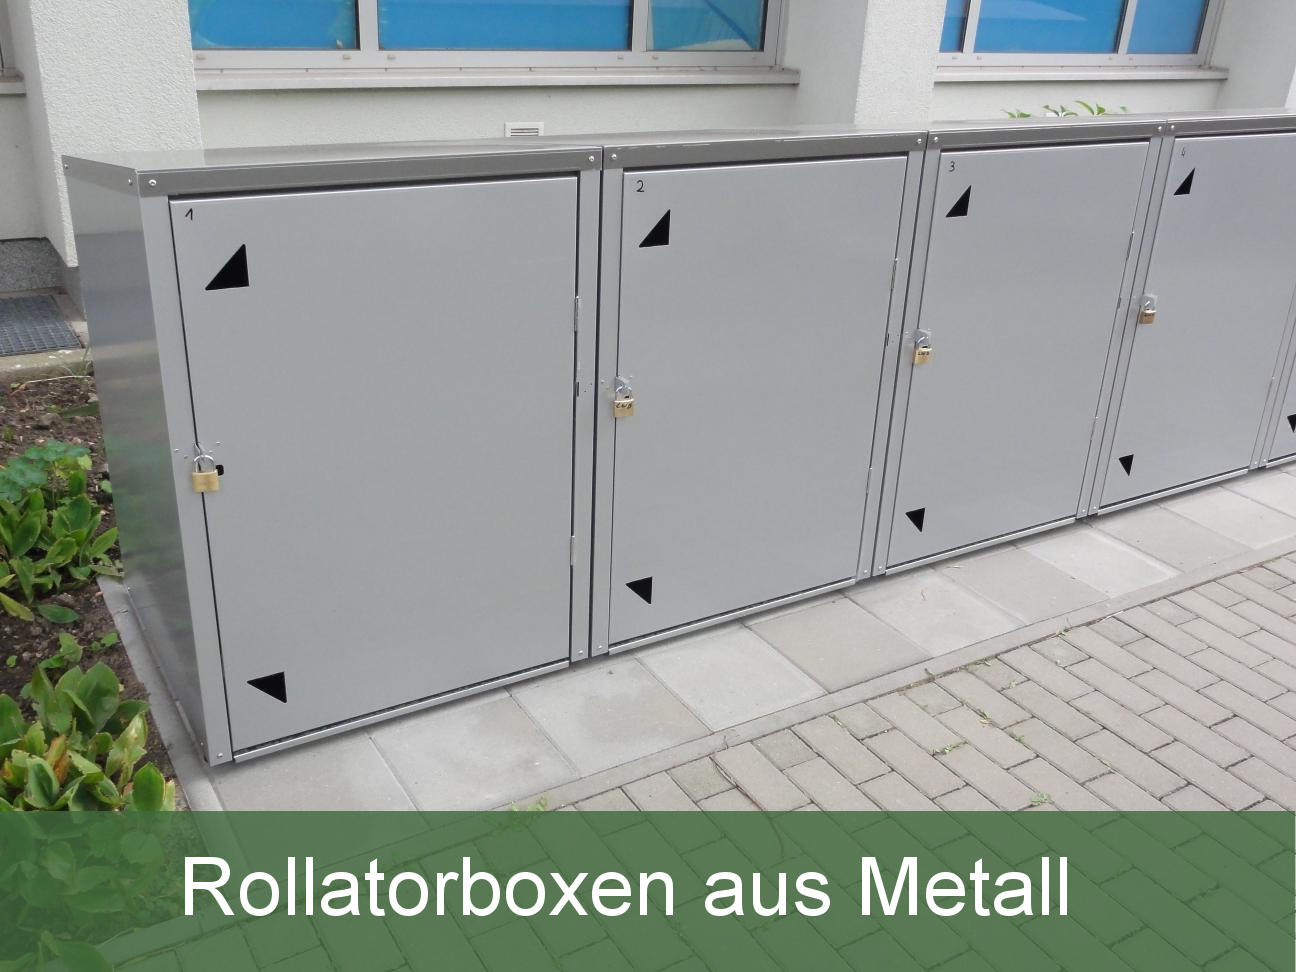 Rollatorbox_Rollatorgarage_Metall_Gehhilfe_Unterstand